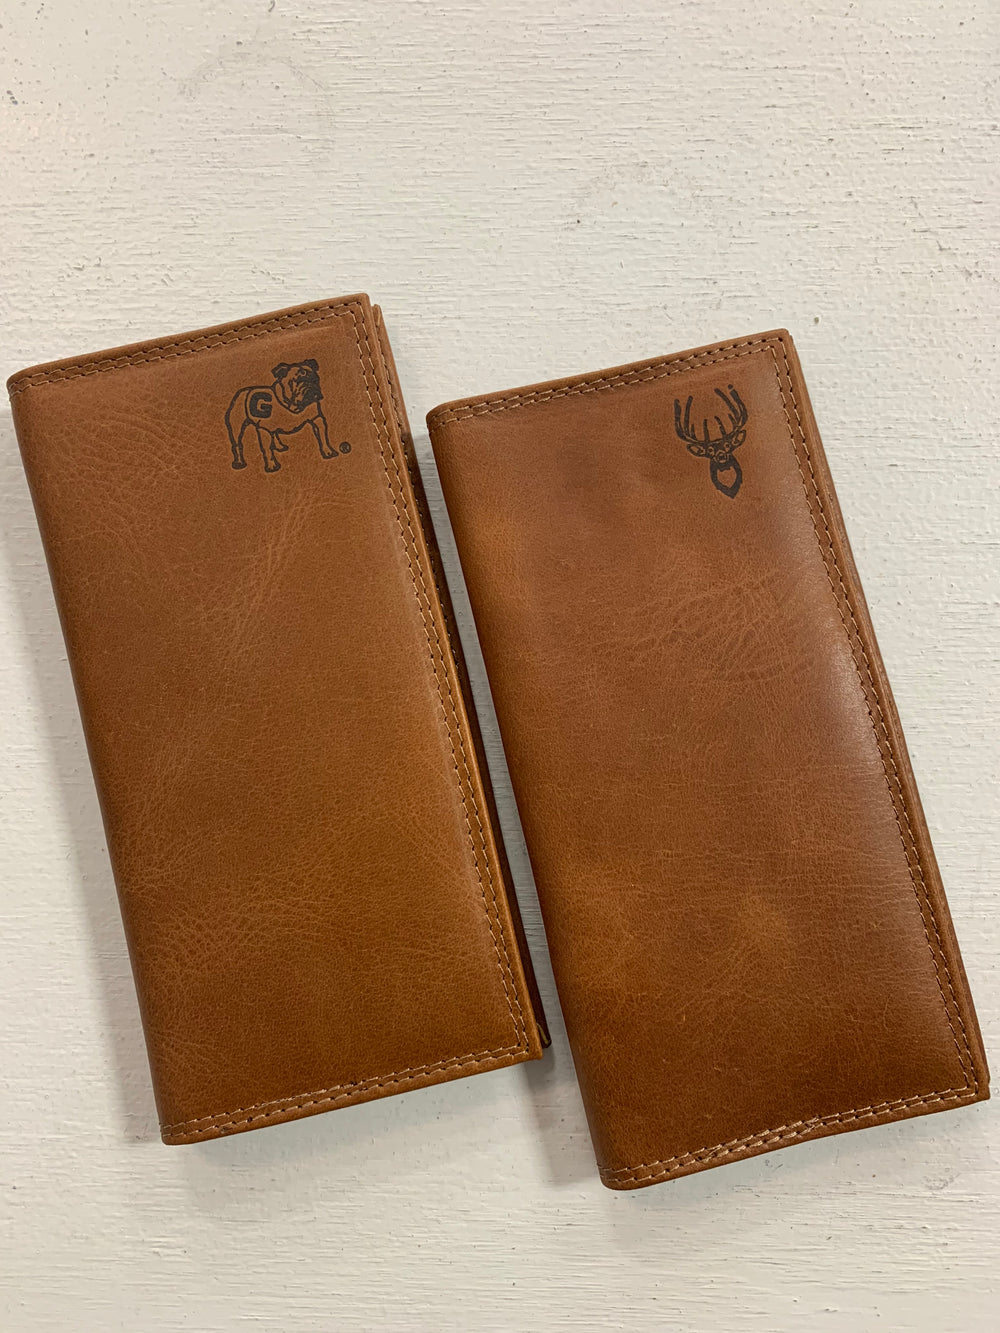 Zep-Pro | Men's Embossed Leather Wallet-Checkbook